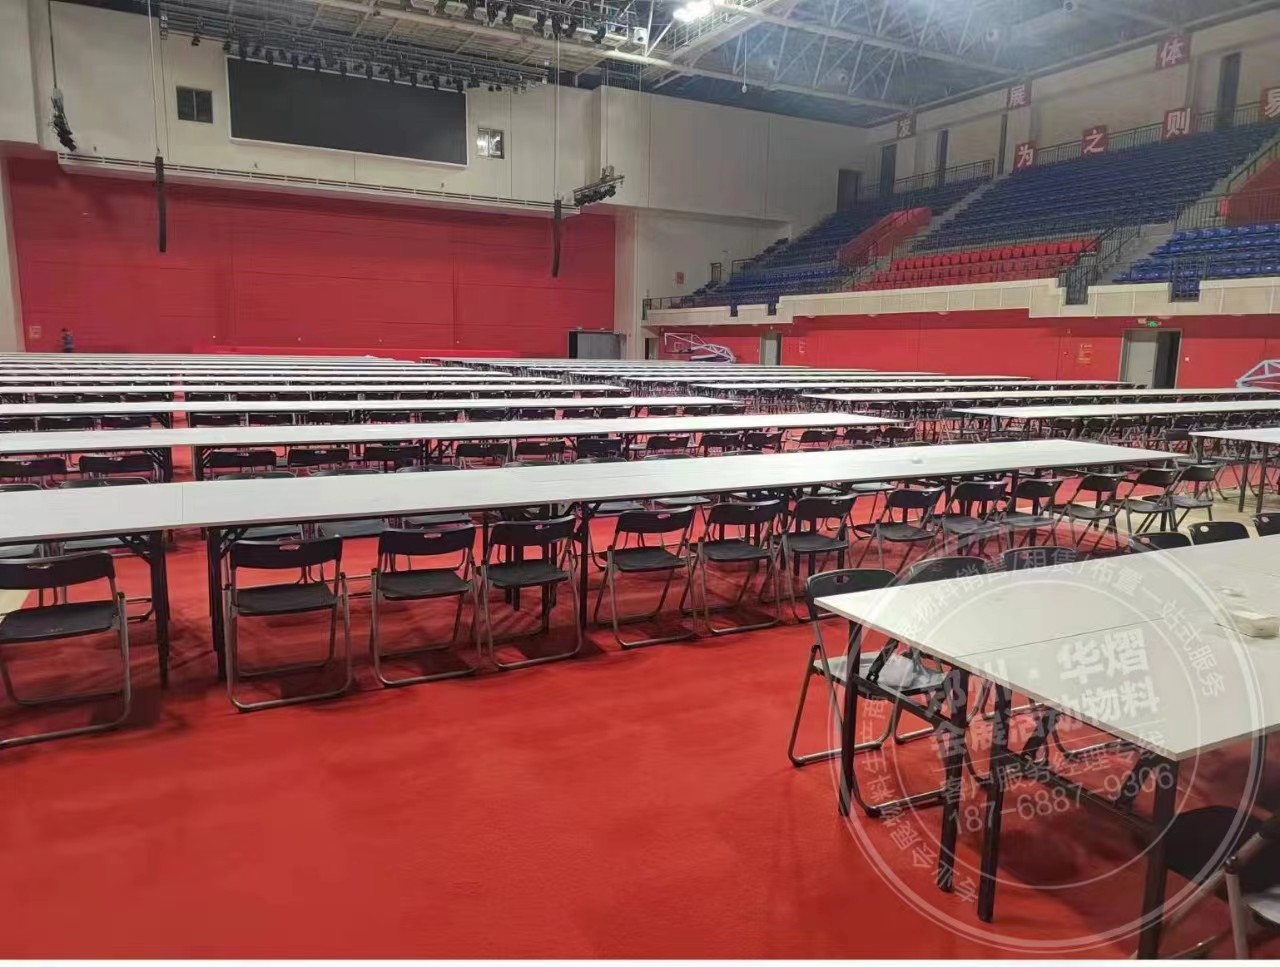 郑州轻工业学院活动长条桌折叠椅租赁布置现场